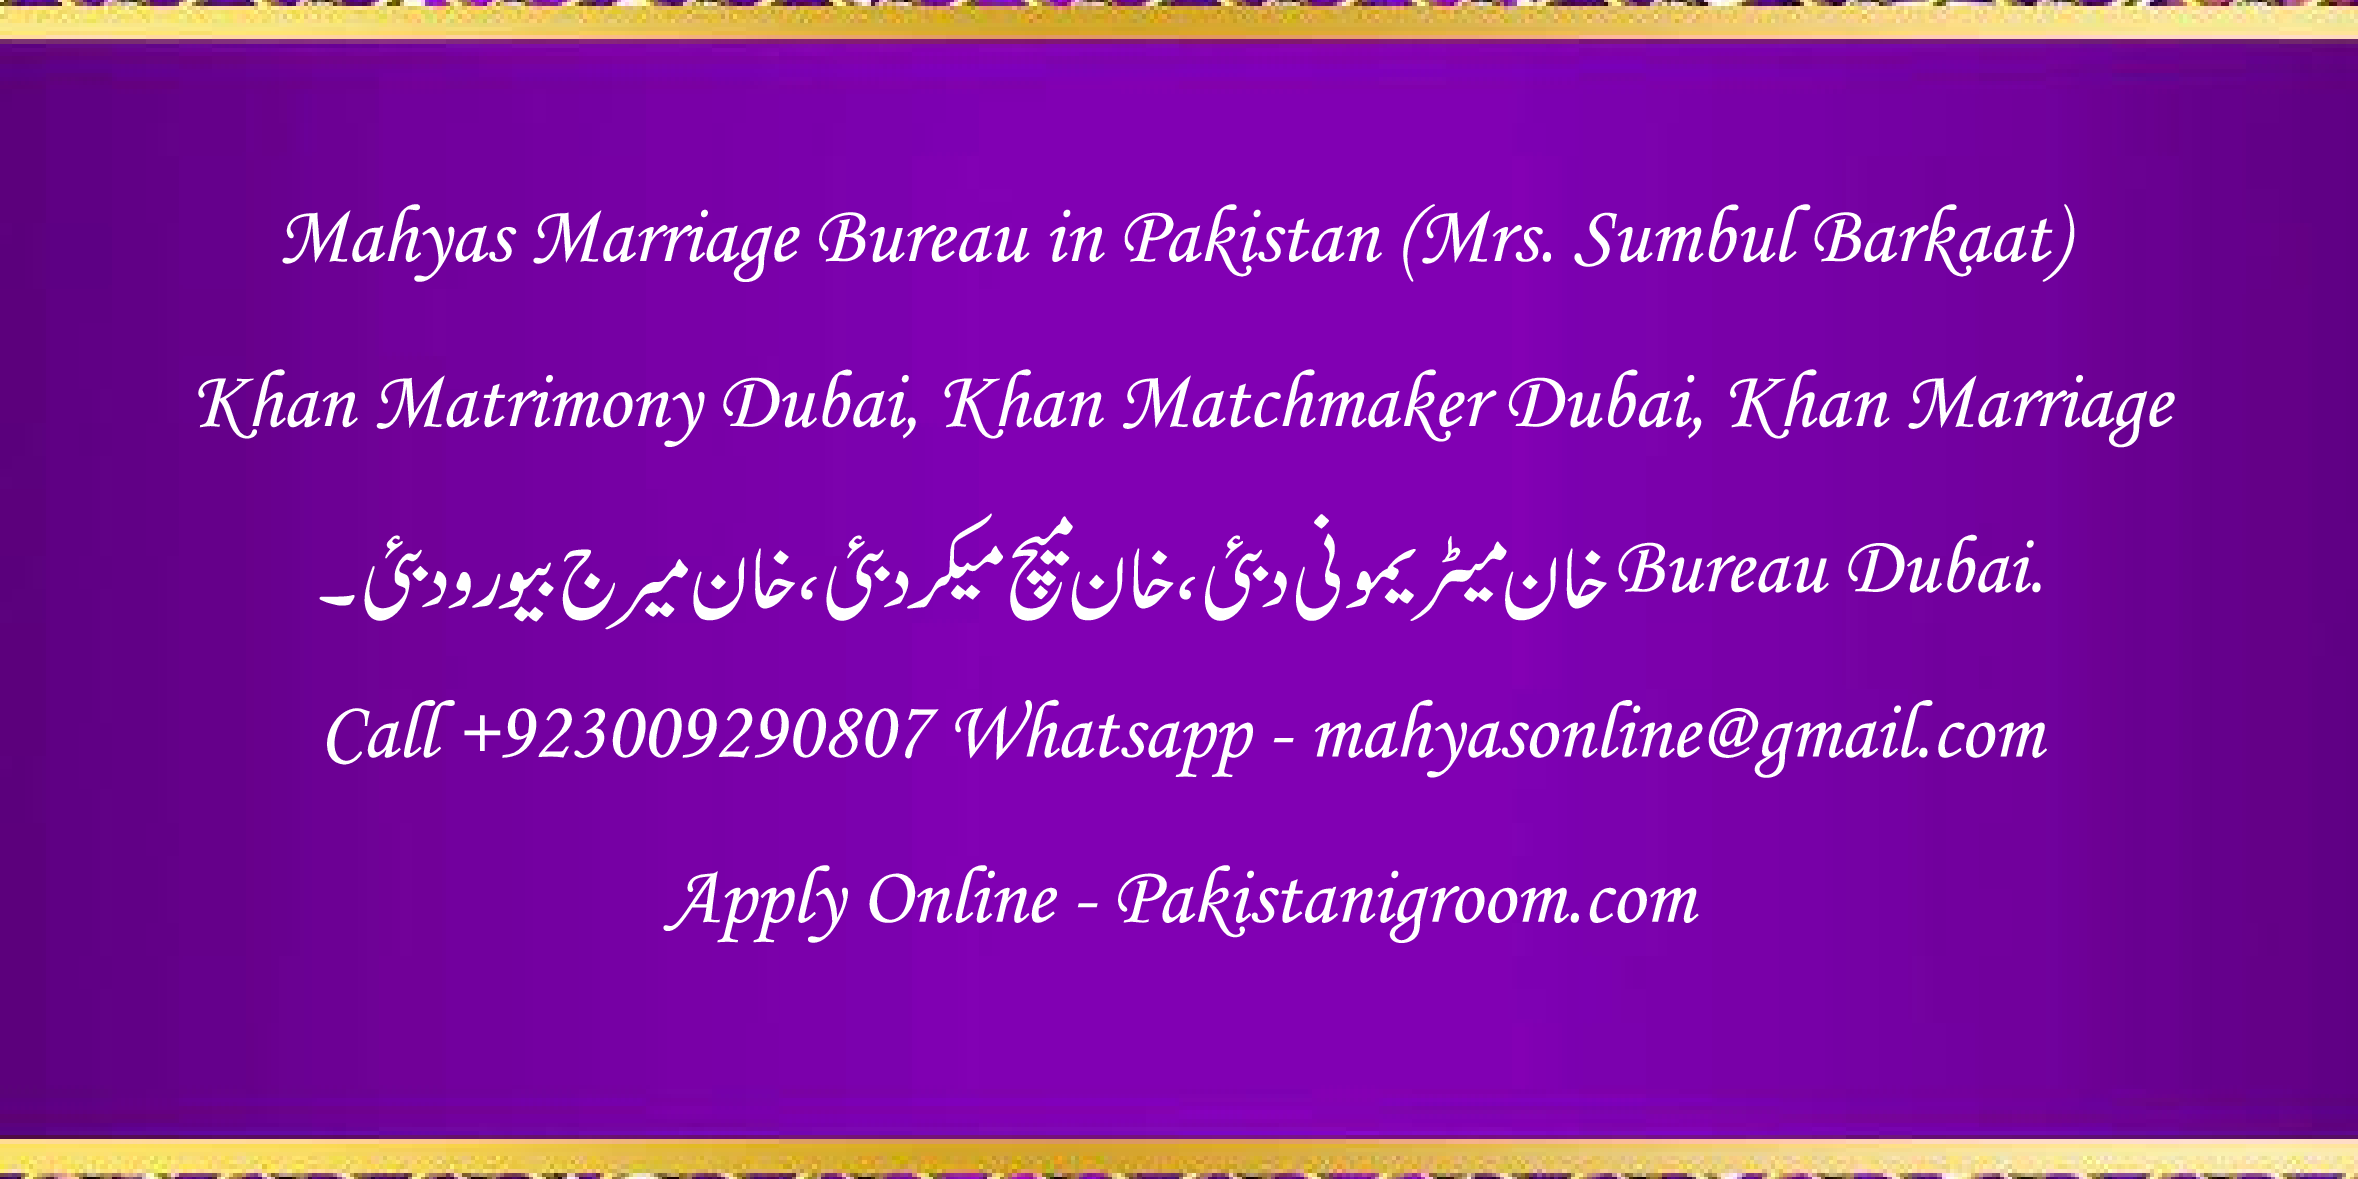 Mahyas-marriage-bureau-Karachi-Pakistan-for-Shia-Sunni-Remarriage-Divorce-Widow-Second-marriage-Punjabi-Pashto-Urdu-9.png